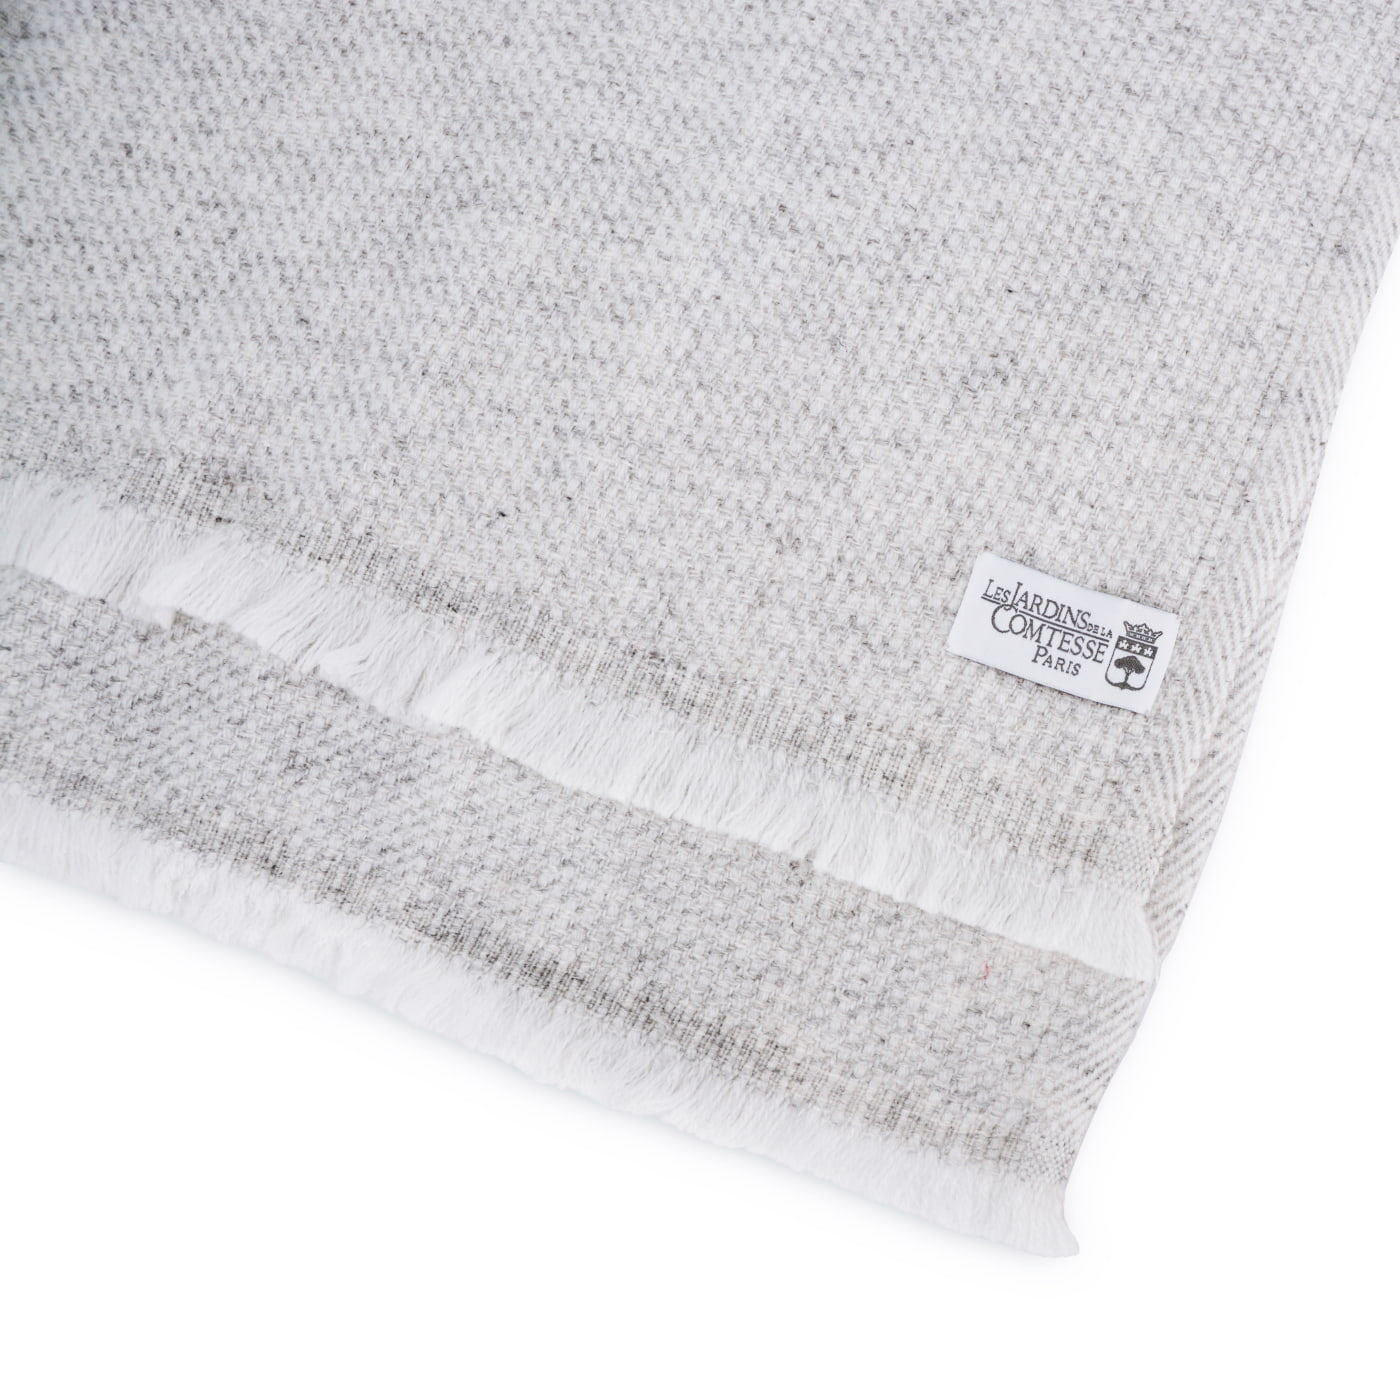 Schal aus Kaschmir und Woll für Mann und Frau 40 x 190 cm - Silbergrau / Weiß